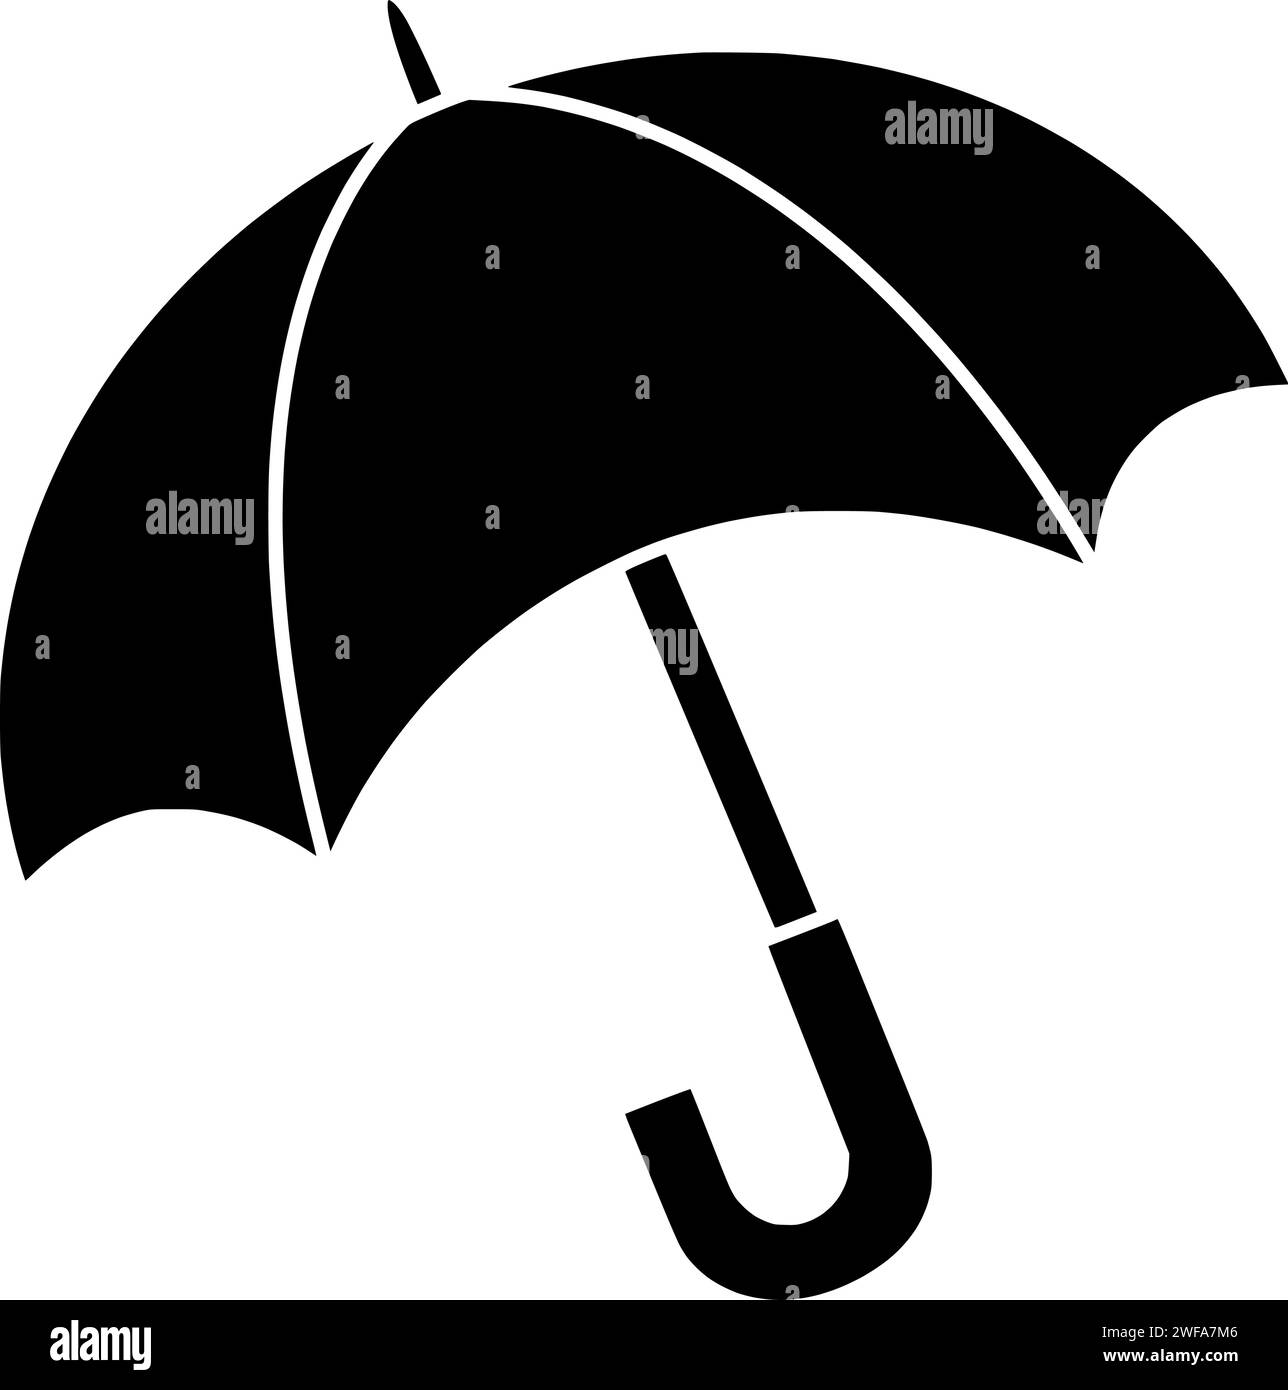 Regenschirm Illustration Schutz Silhouette Schirm Logo Saison-Icon Wetterkontur offener Regengriff Schutz Wasser Herbst Regenzubehör Meteorologie Form Sonnenschirm Trockenversicherung Stock Vektor